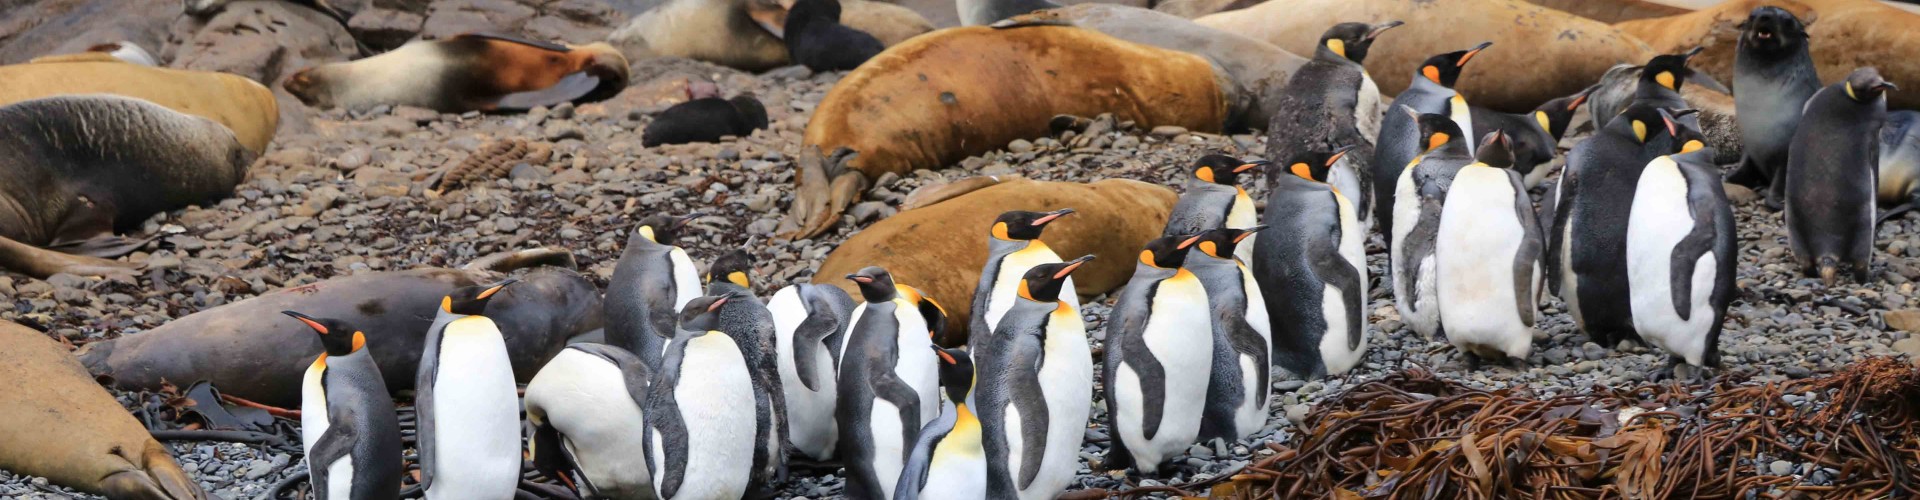 Antarctica - South Georgia - Quark - penguins and seals by Neil Spalding